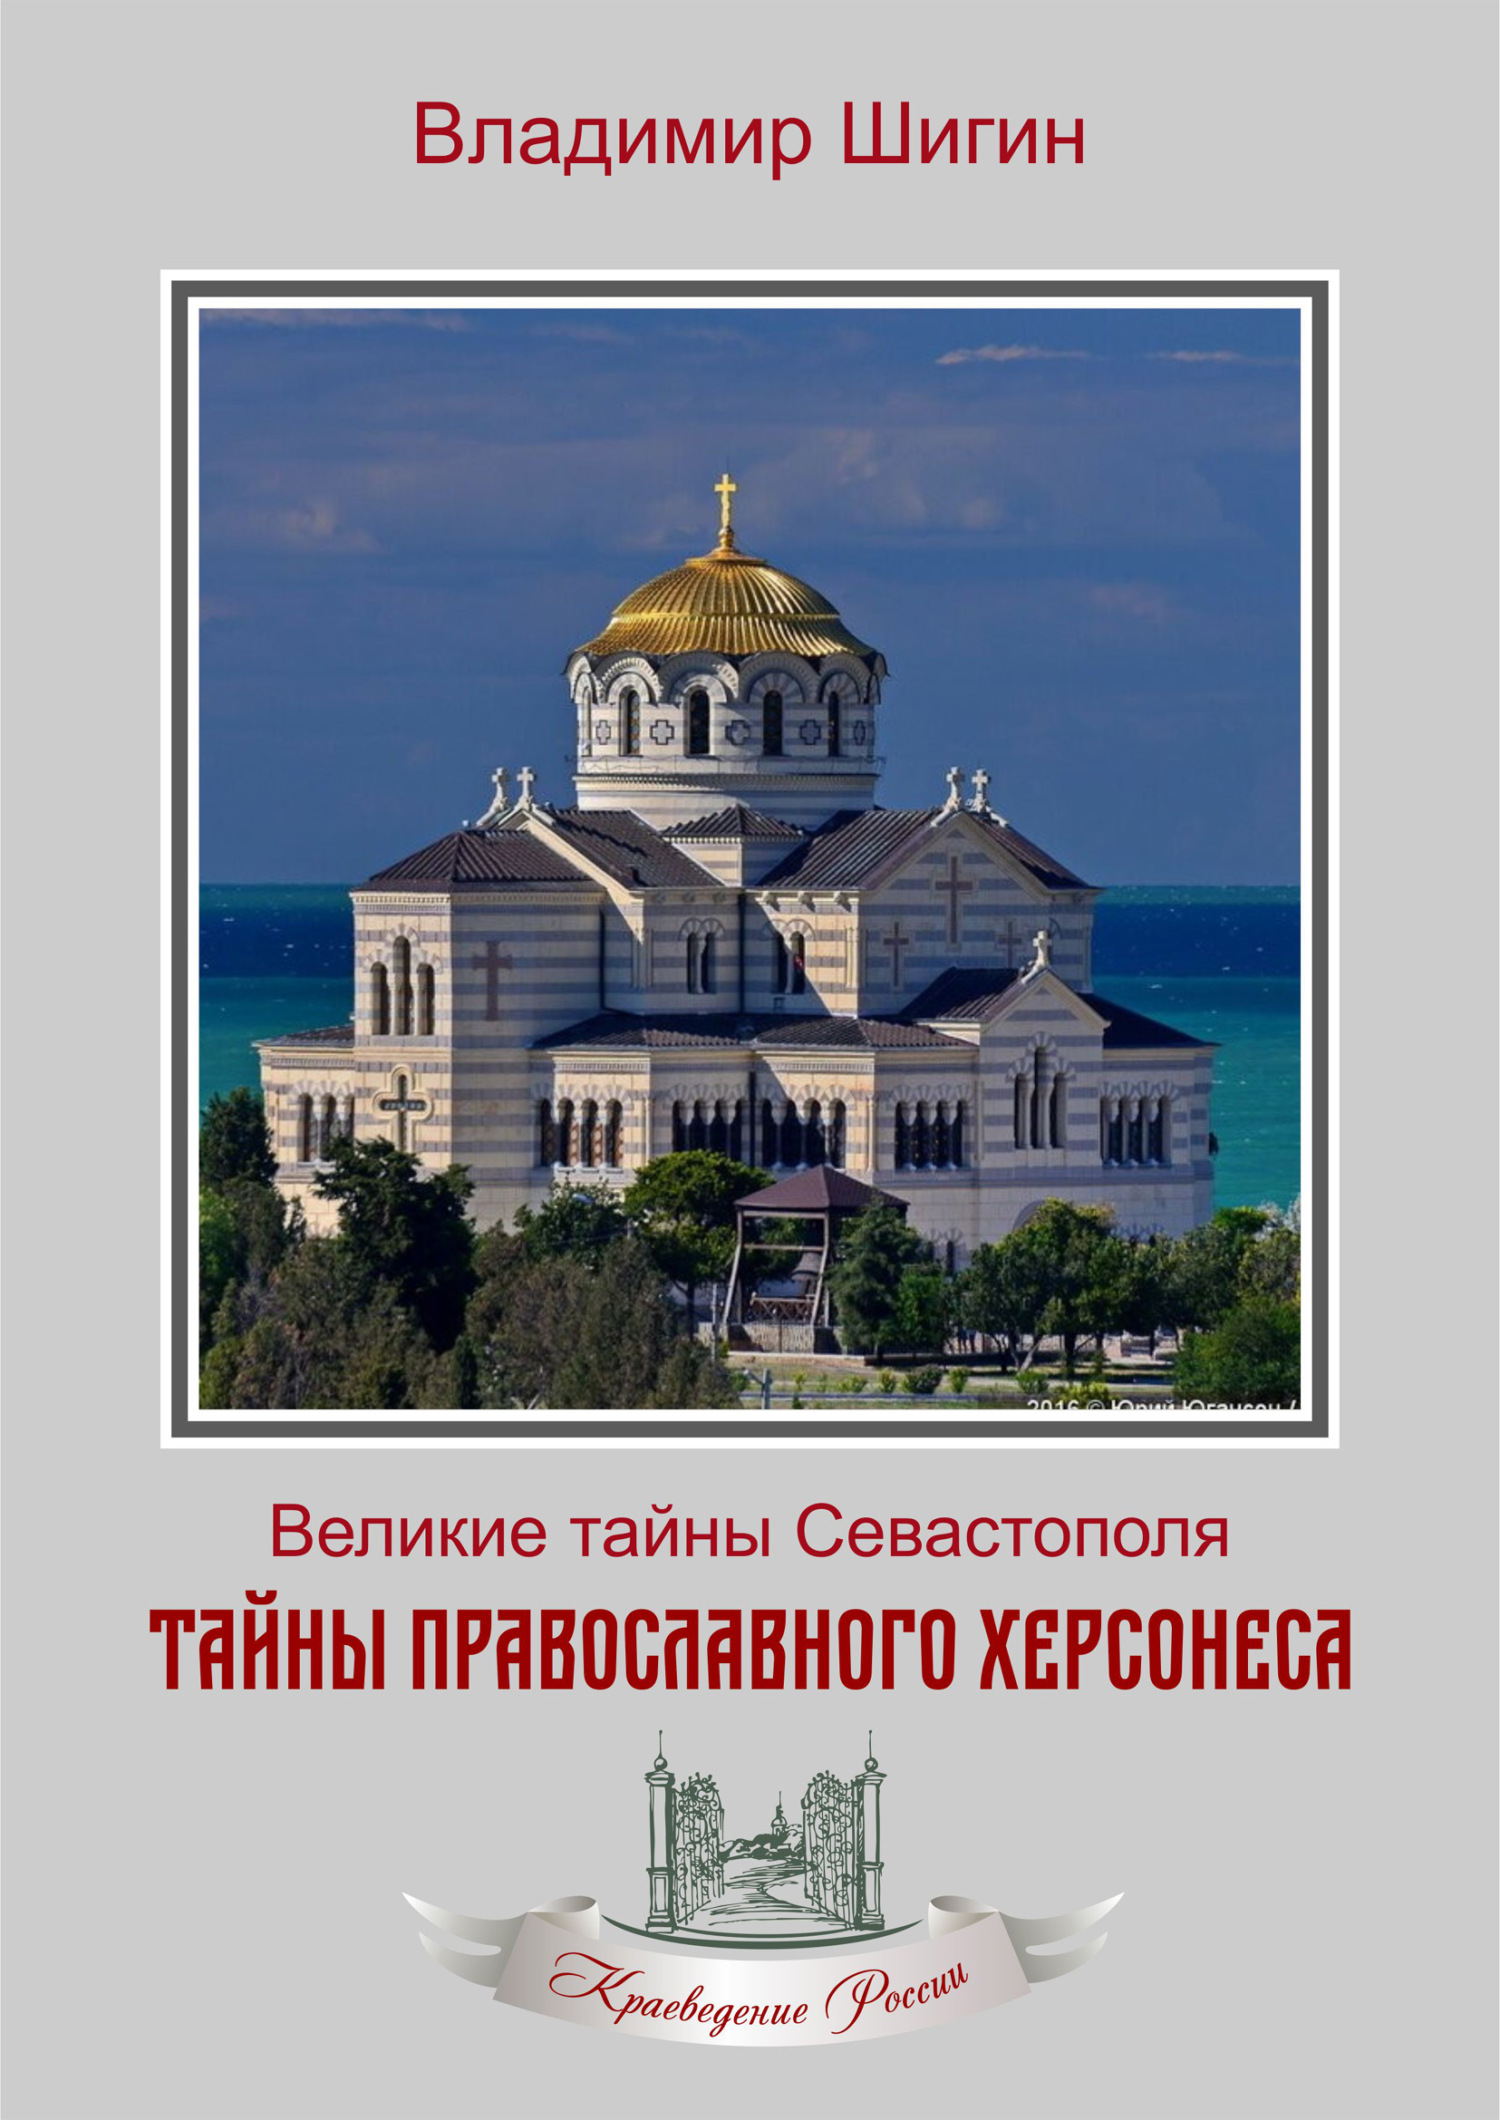 Тайны православного Херсонеса - Владимир Виленович Шигин